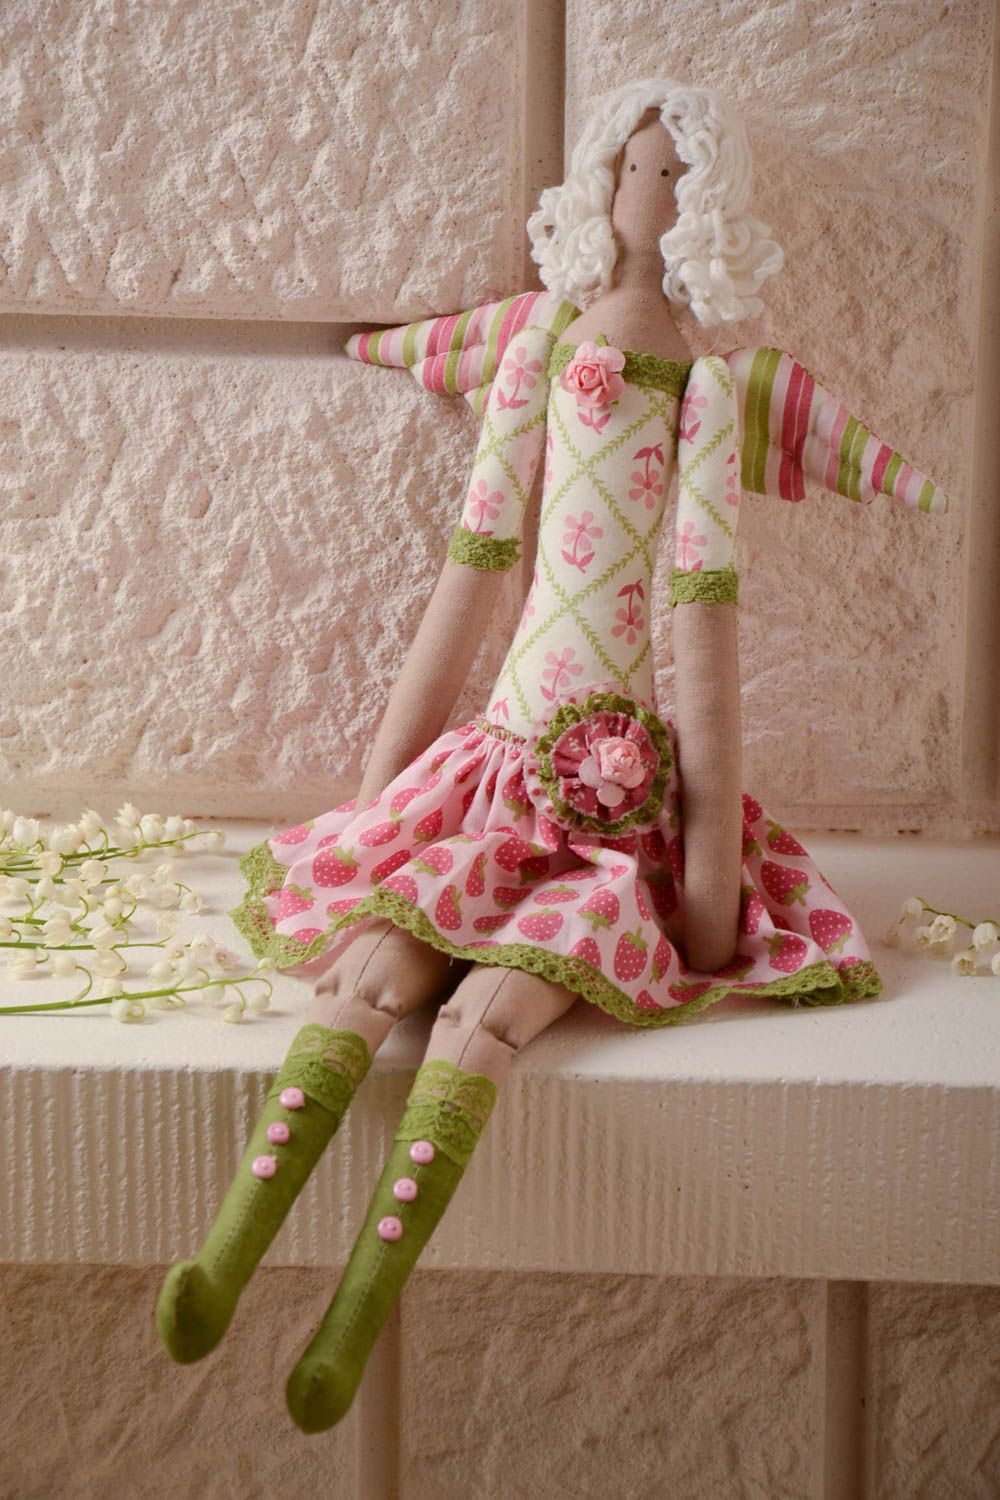 Мягкая тканевая игрушка ангелочек в цветочном платье из хлопка ручной работы фото 1